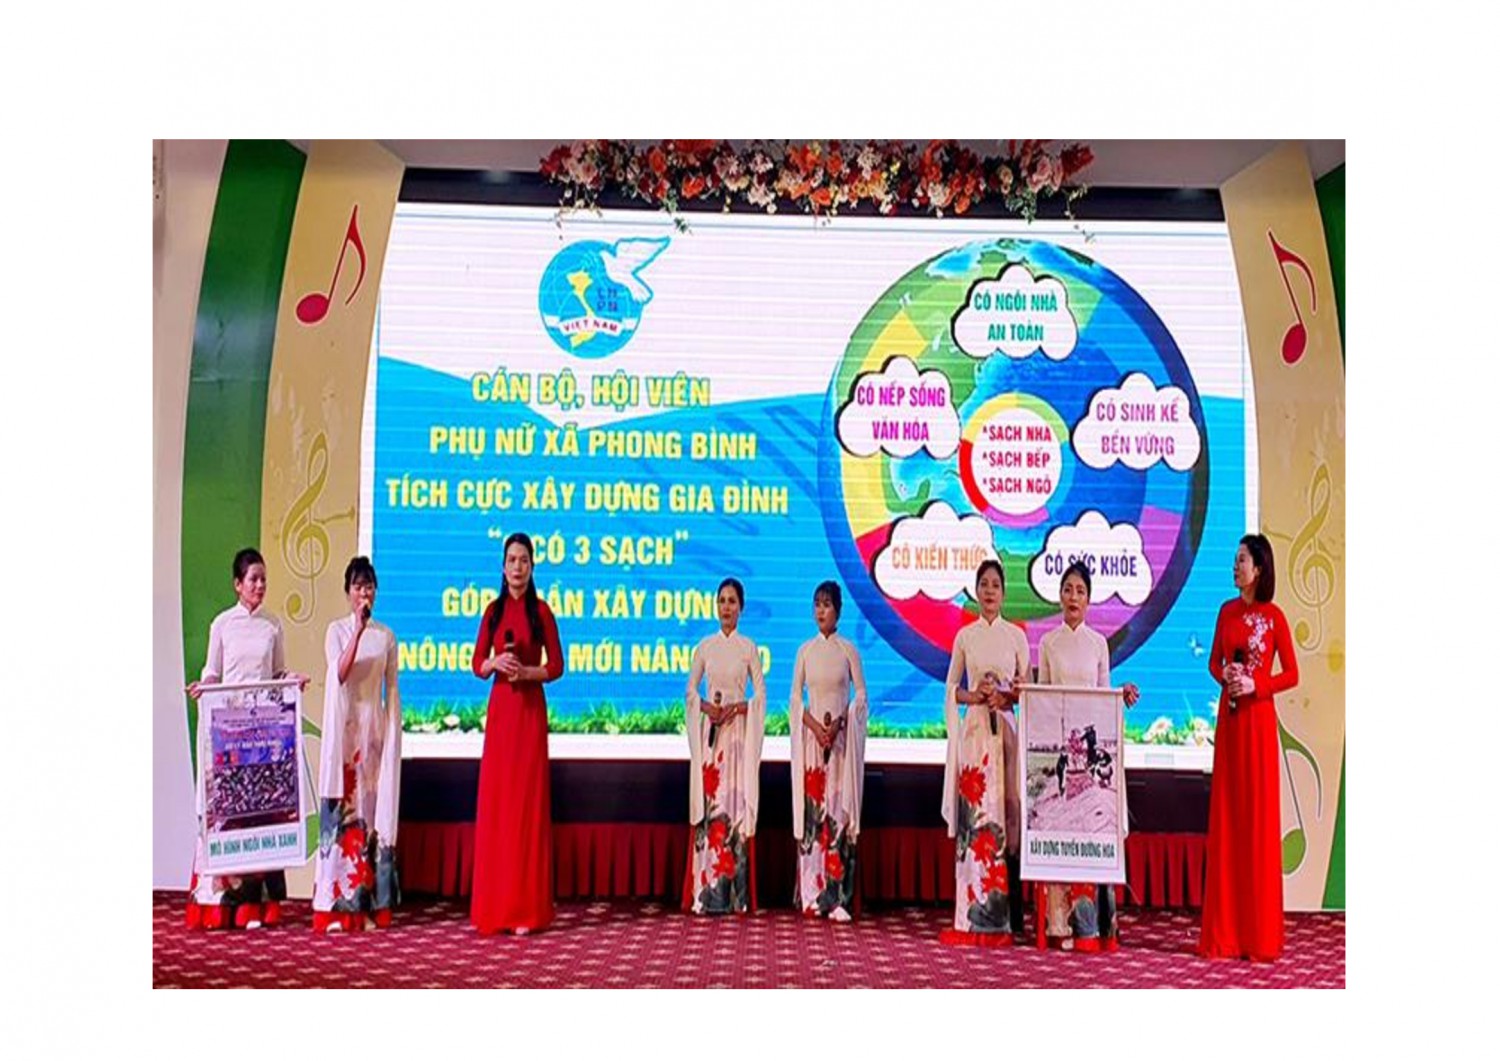 Nội dung phụ nữ tham gia bảo vệ môi trường được Hội LHPN huyện Gio Linh lồng ghép khéo léo vào một phần thi